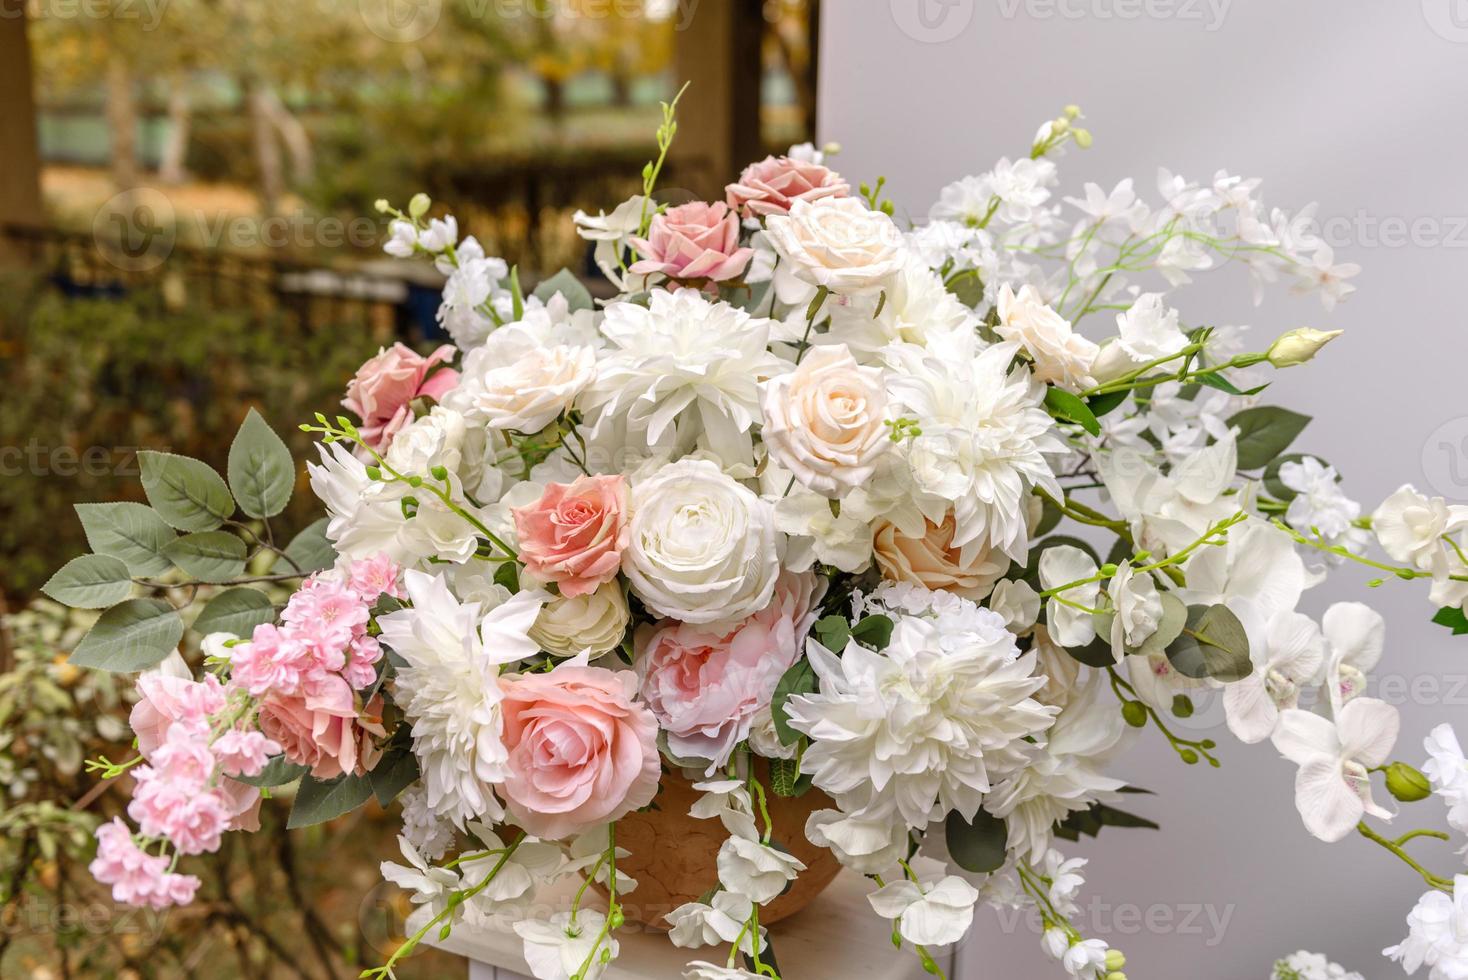 wunderschöne florale Kompositionen im Restaurant für die Hochzeitszeremonie foto